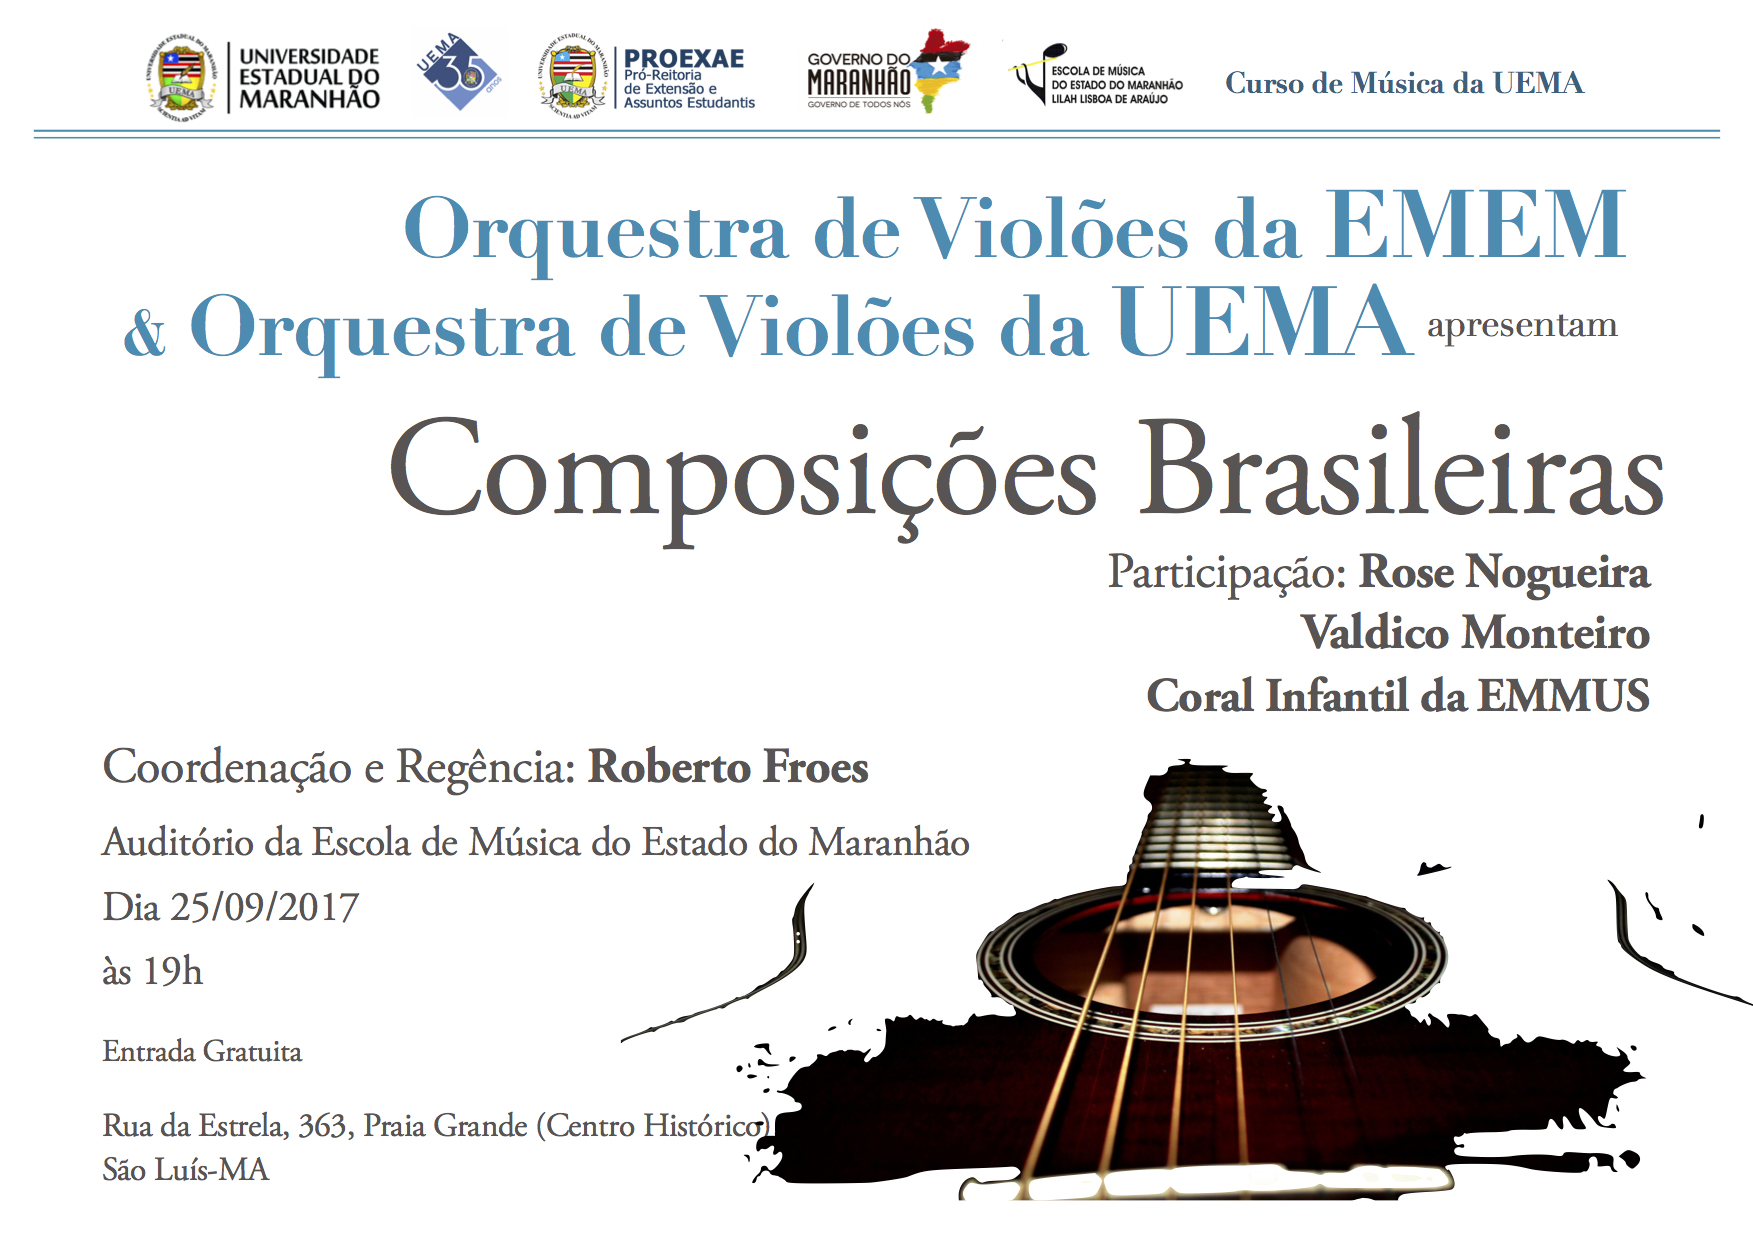 Orquestra de Violões da UEMA se apresenta hoje em São Luís